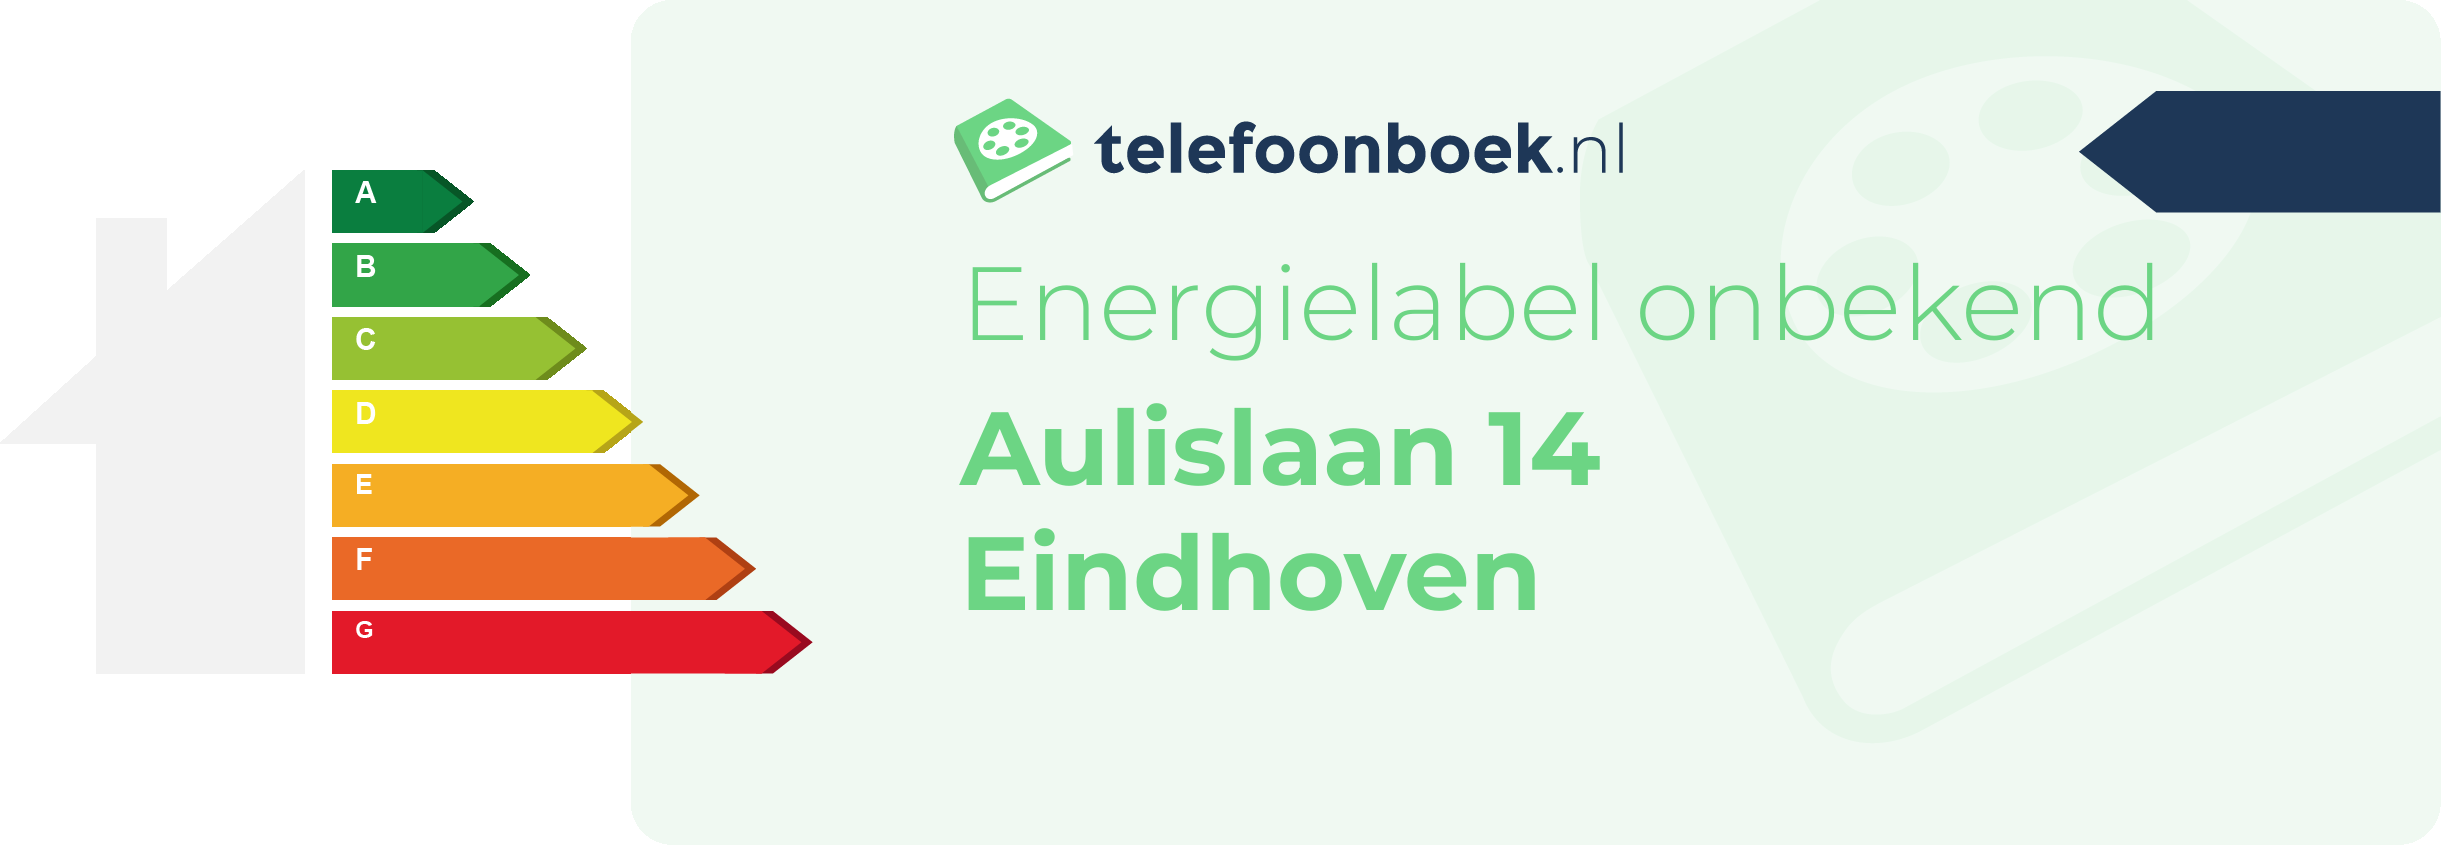 Energielabel Aulislaan 14 Eindhoven